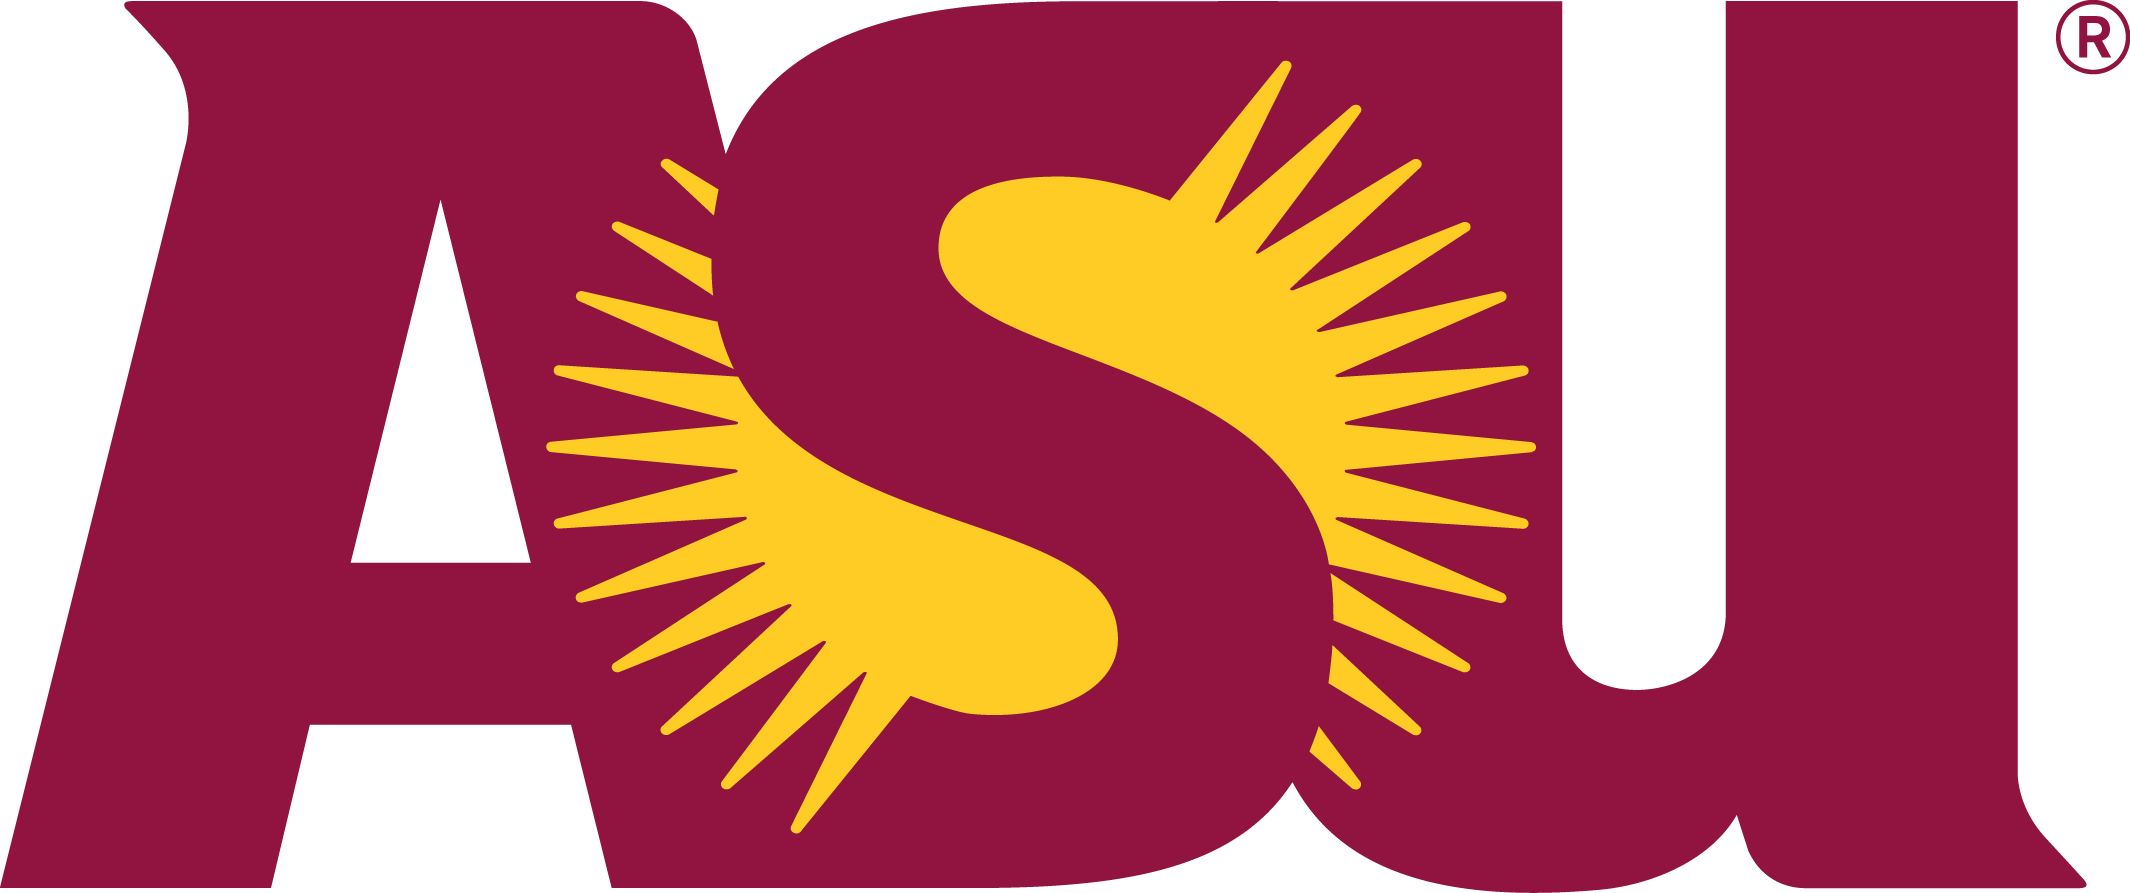 Asu Sparky Clipart Collection - Arizona State University Logo Vector (2130x893)